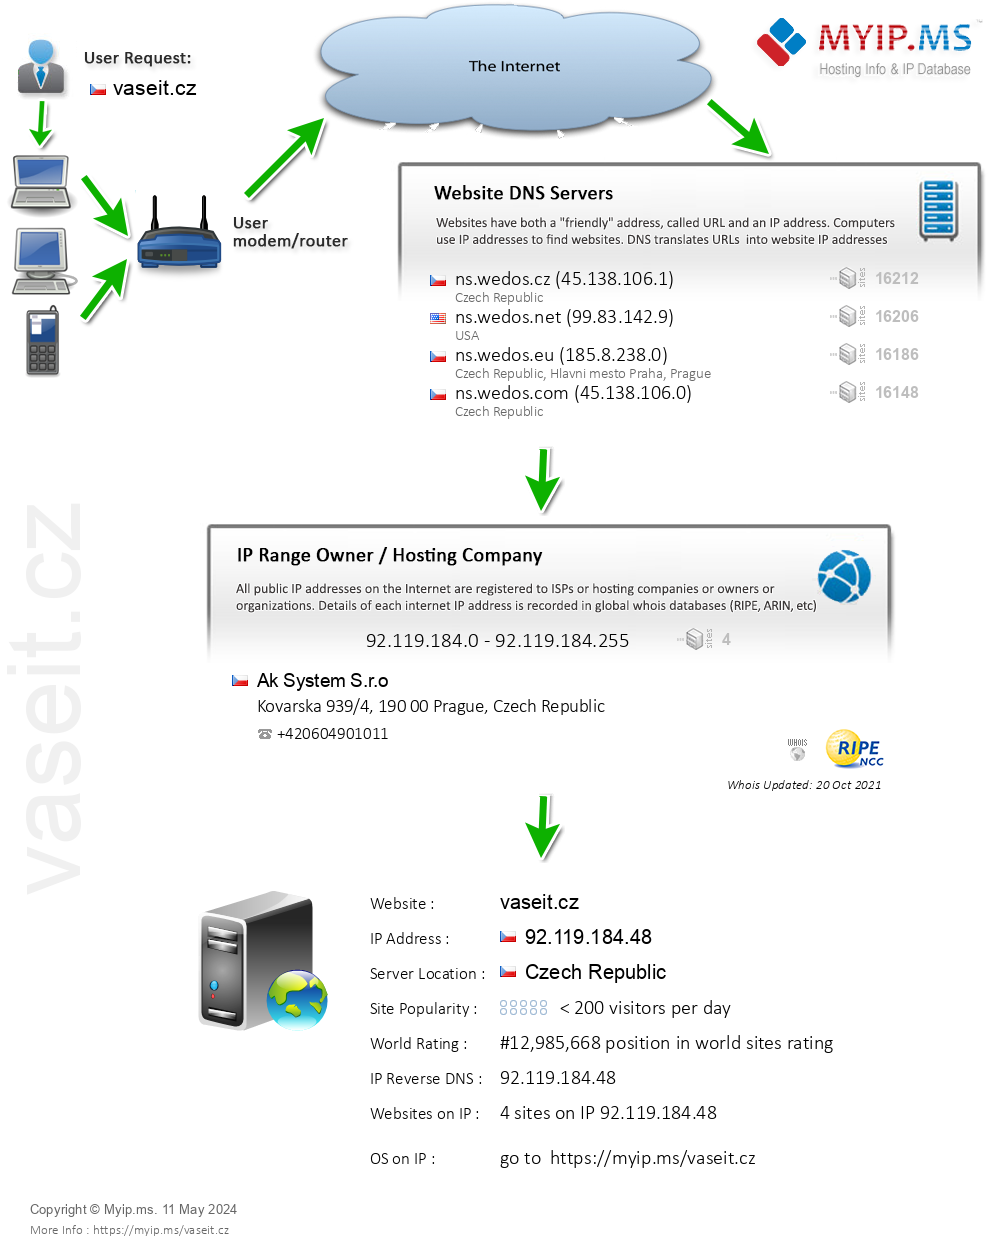 Vaseit.cz - Website Hosting Visual IP Diagram